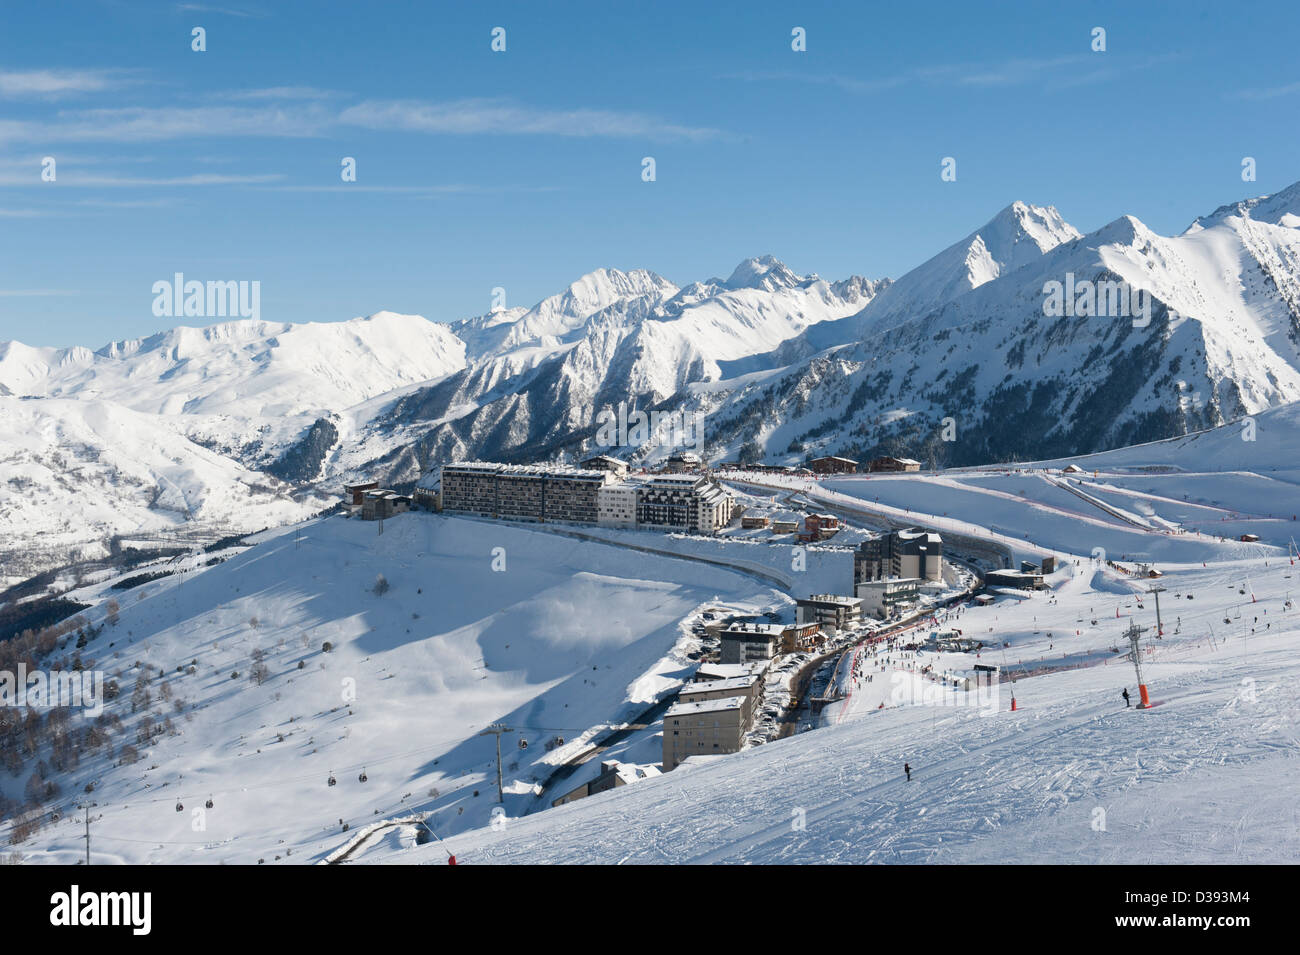 Saint-Lary 1700, Station de Ski von Saint-Lary soulAnd, Bergdorf der französischen Pyrenäen Stockfoto